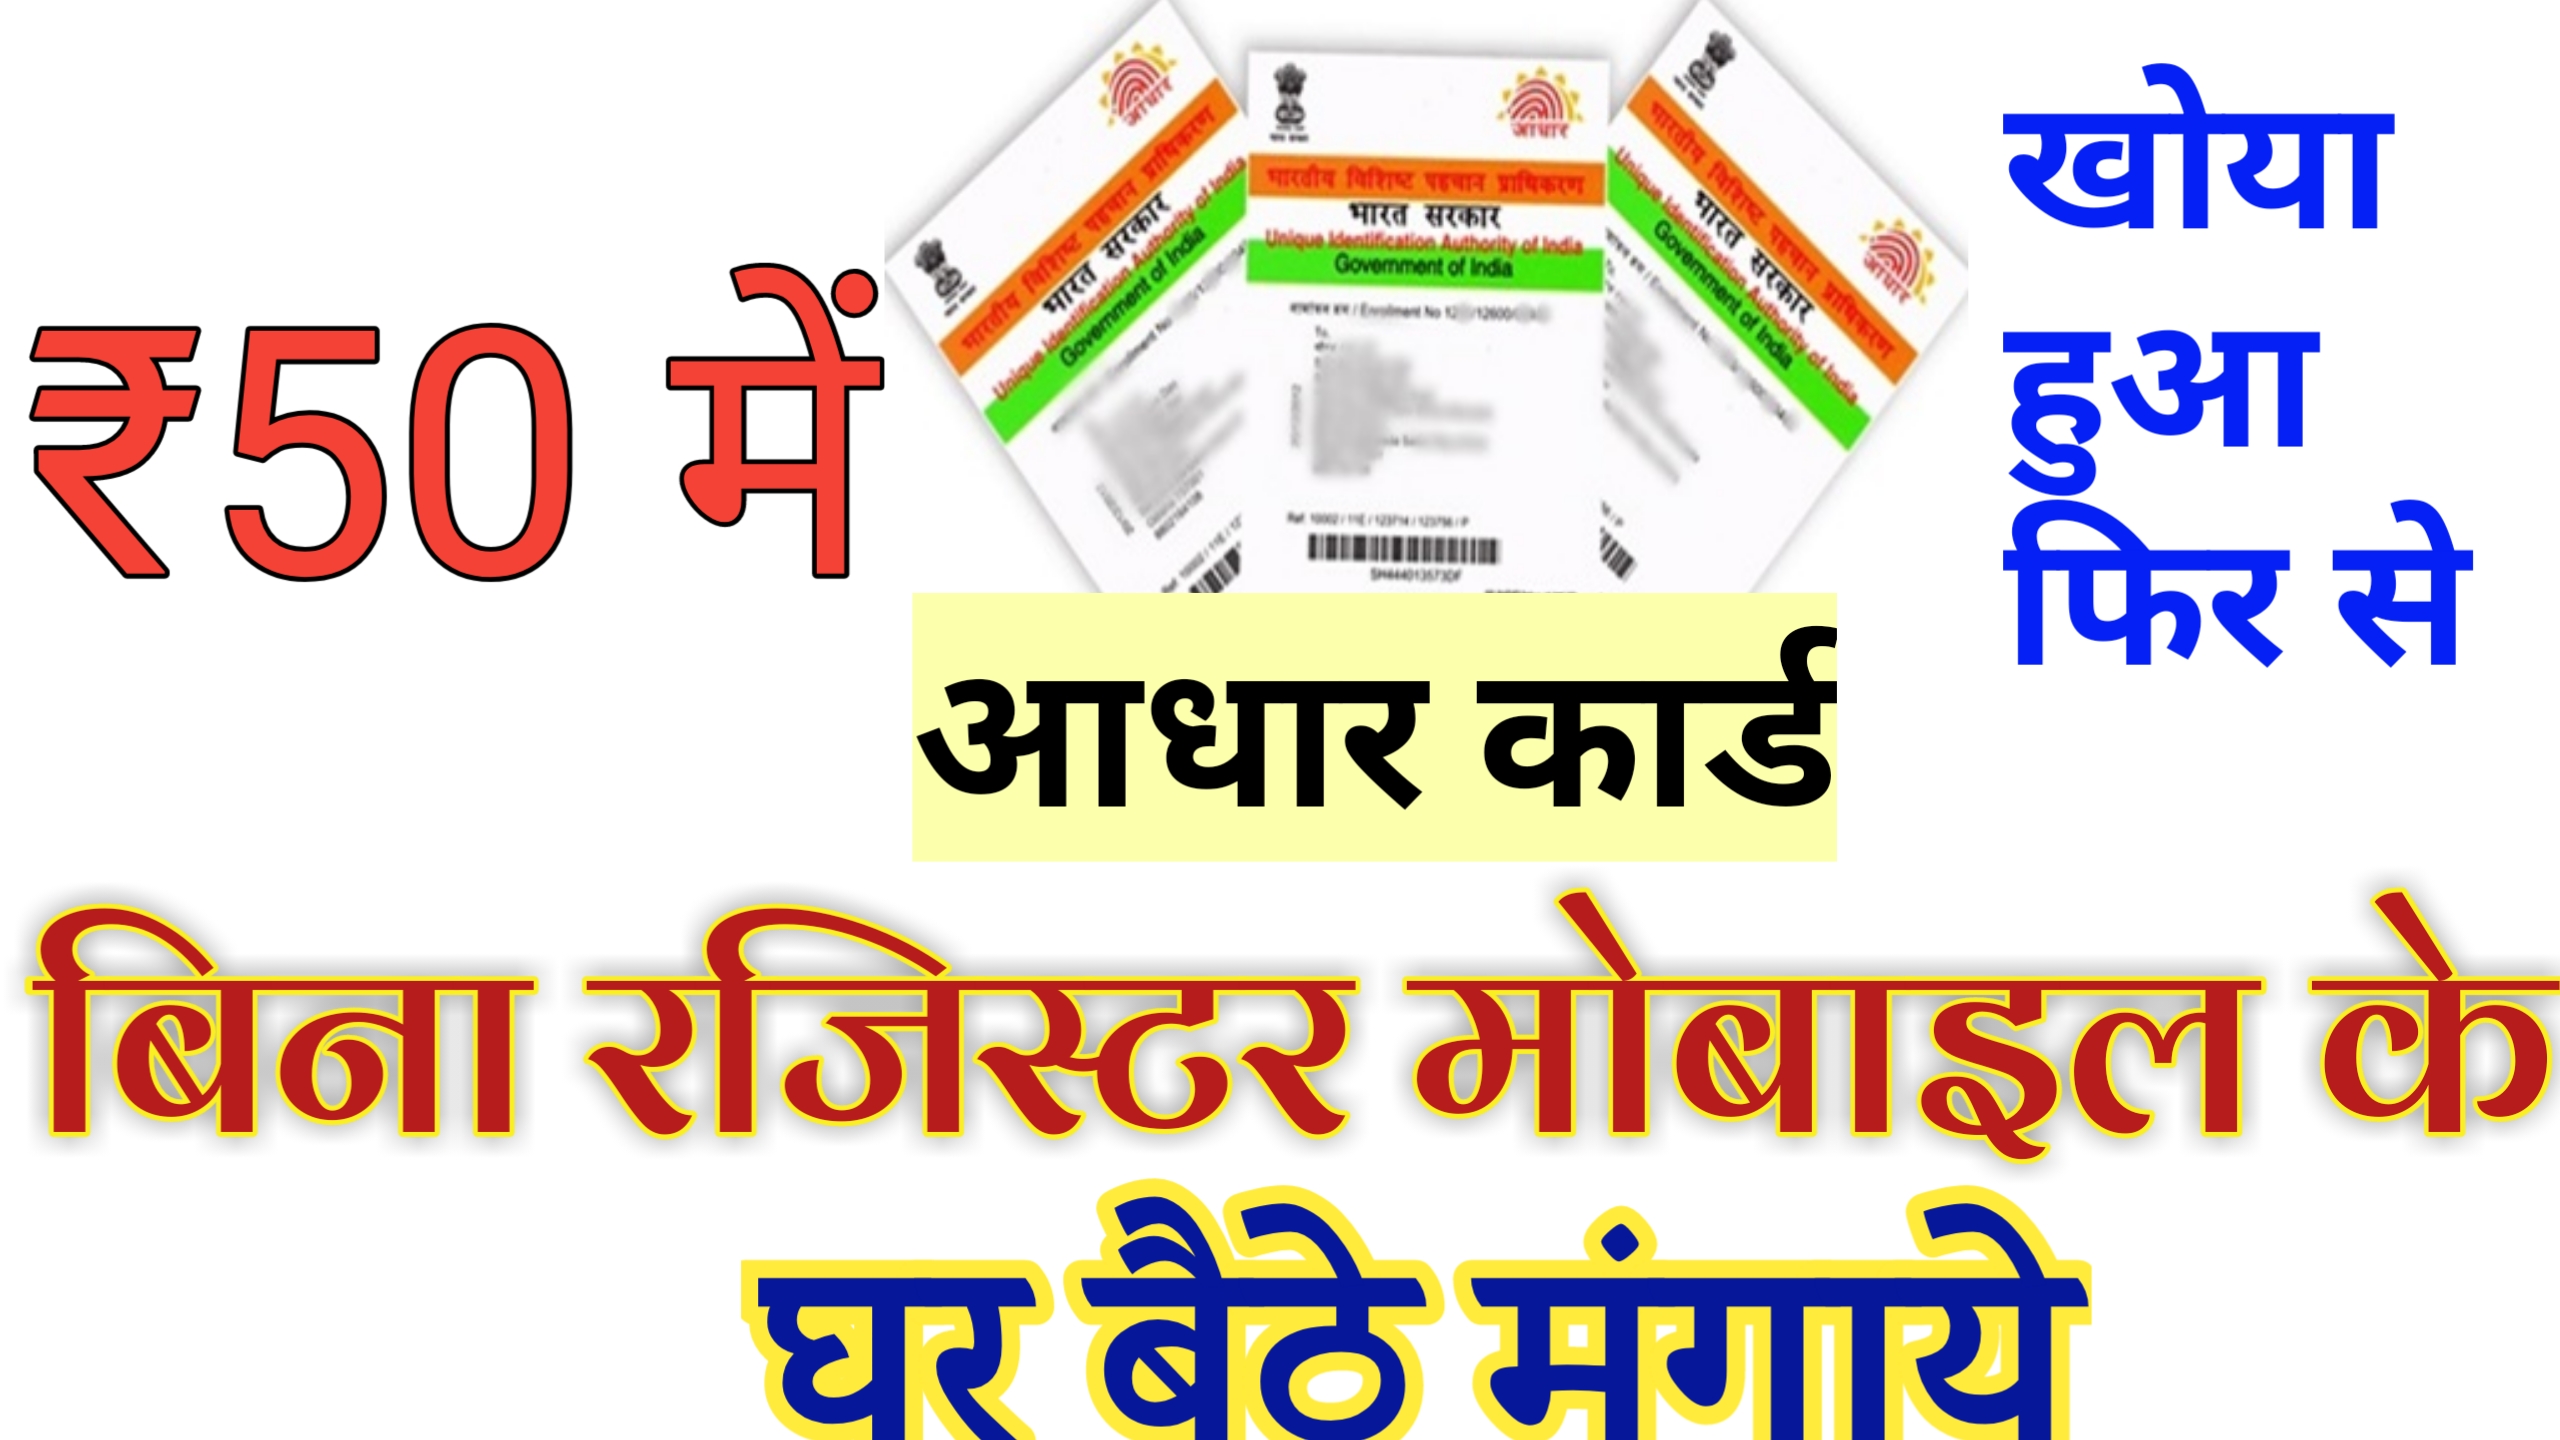 Madhya pradesh Labour Card Online Registration 2020 In Hindi- मध्यप्रदेश श्रमिक कार्ड के लिए ऑनलाइन रजिस्ट्रेशन कैसे करे।